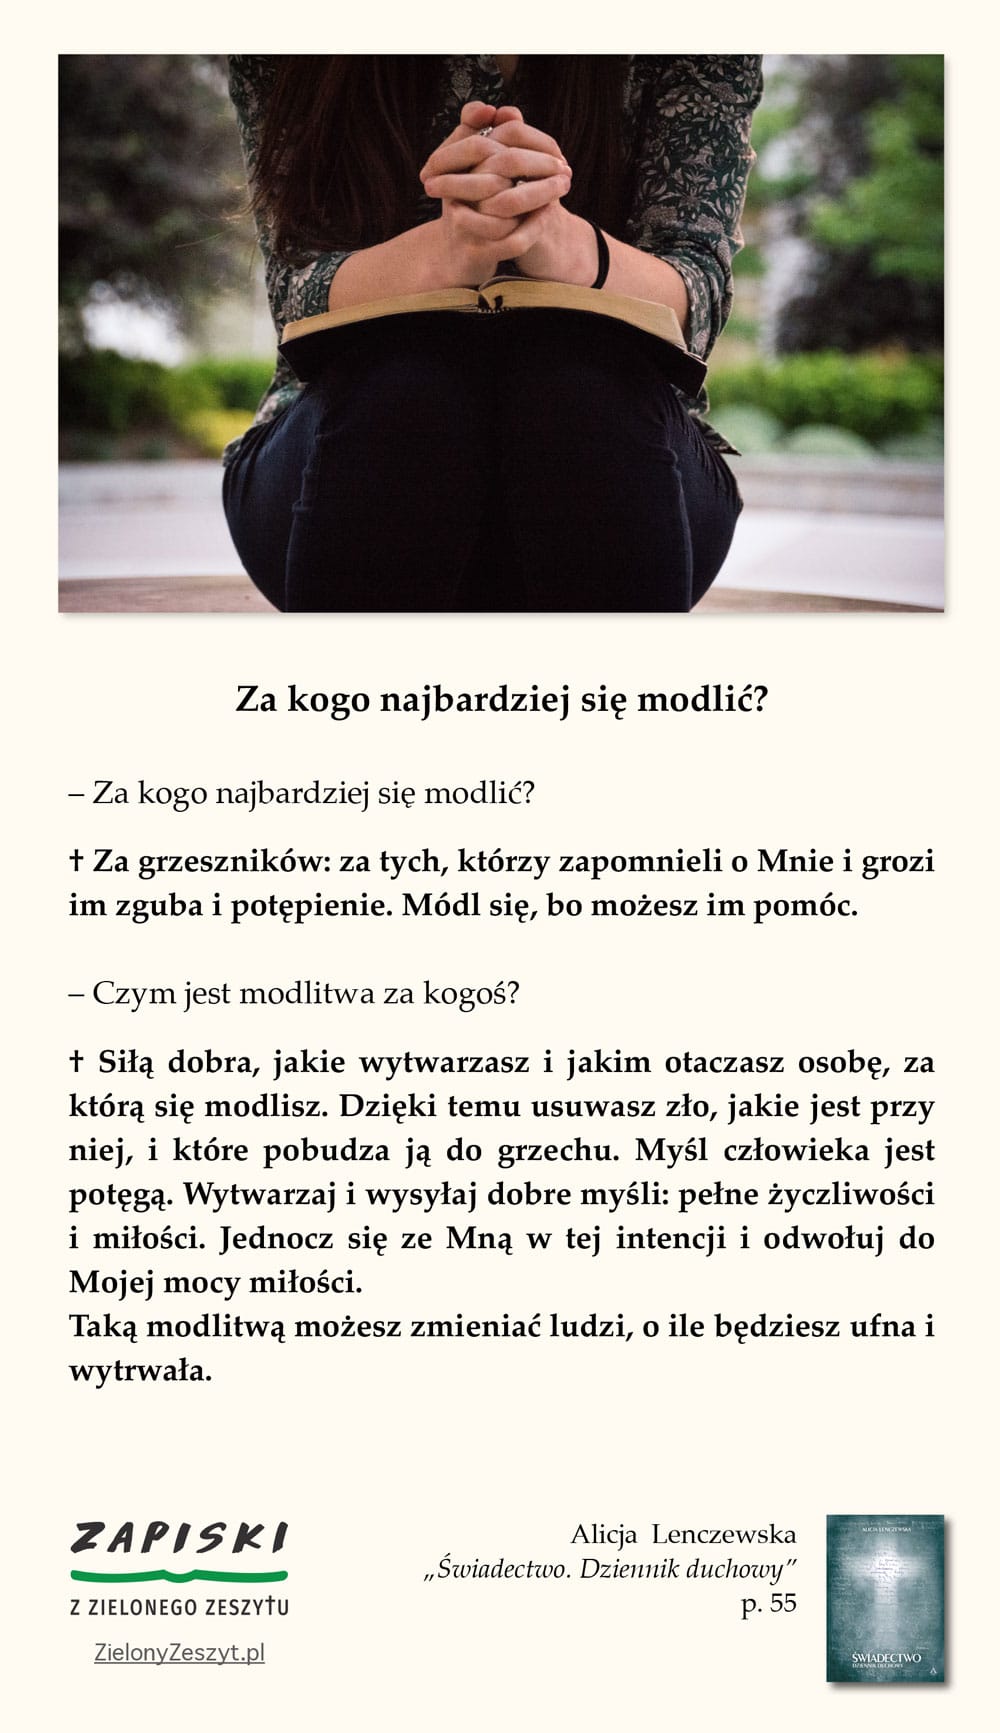 Alicja Lenczewska, „Świadectwo. Dziennik duchowy”, p. 55 (Za kogo najbardziej się modlić?)